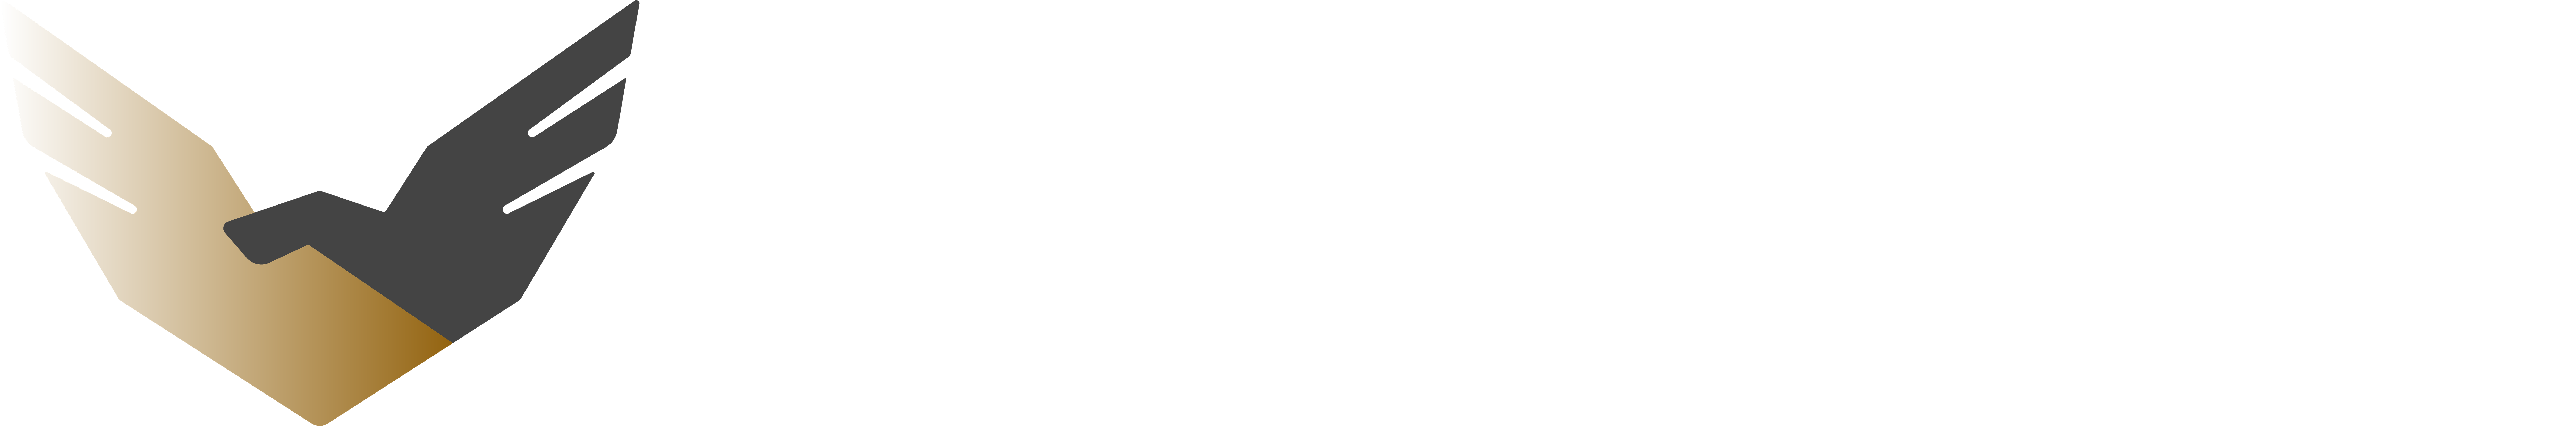 https://kcr.org.pl/wp-content/uploads/2020/06/restrukturyzacja-logo-01.png